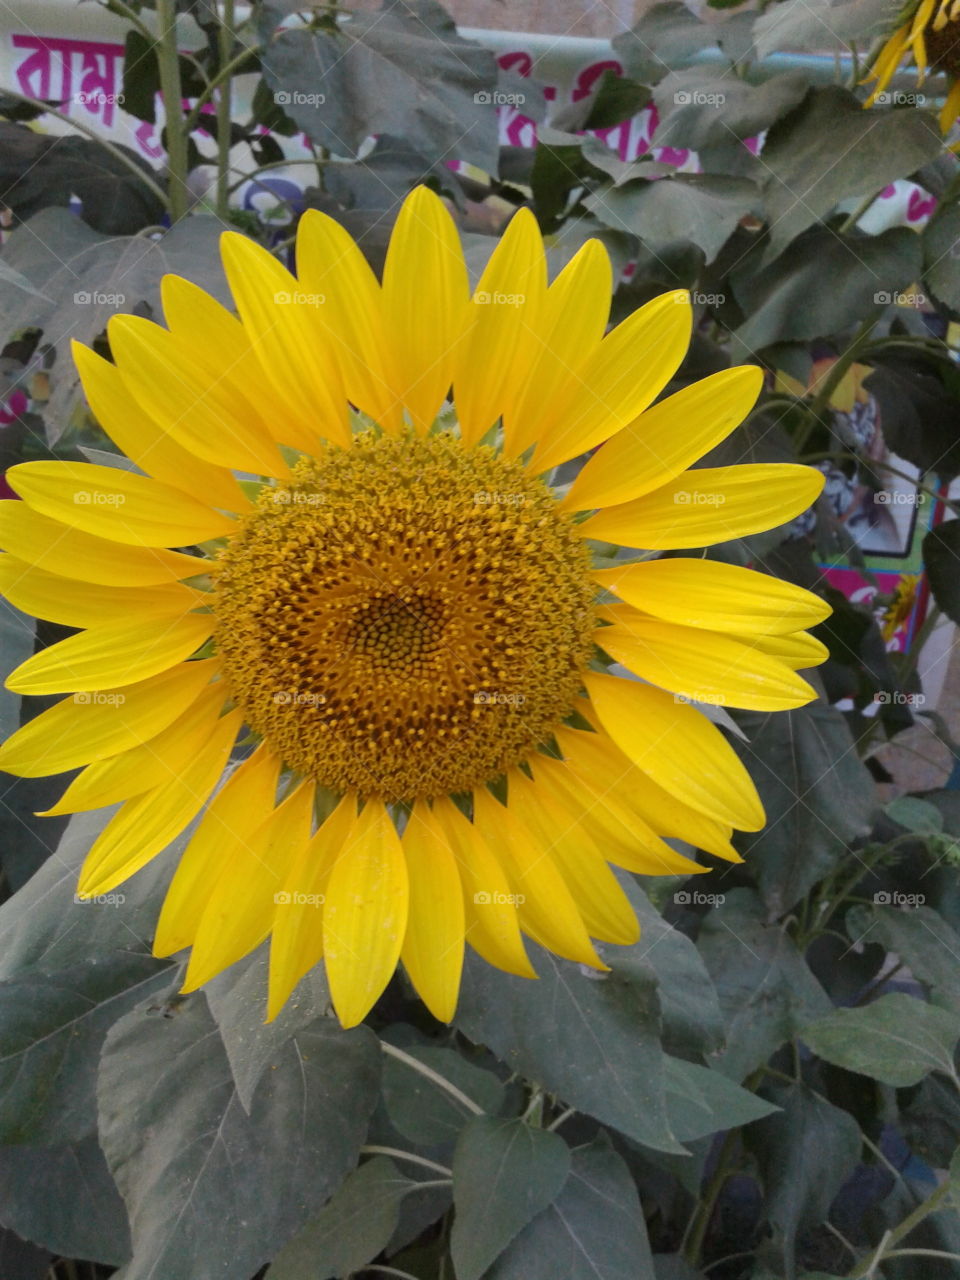 Sunflower in village